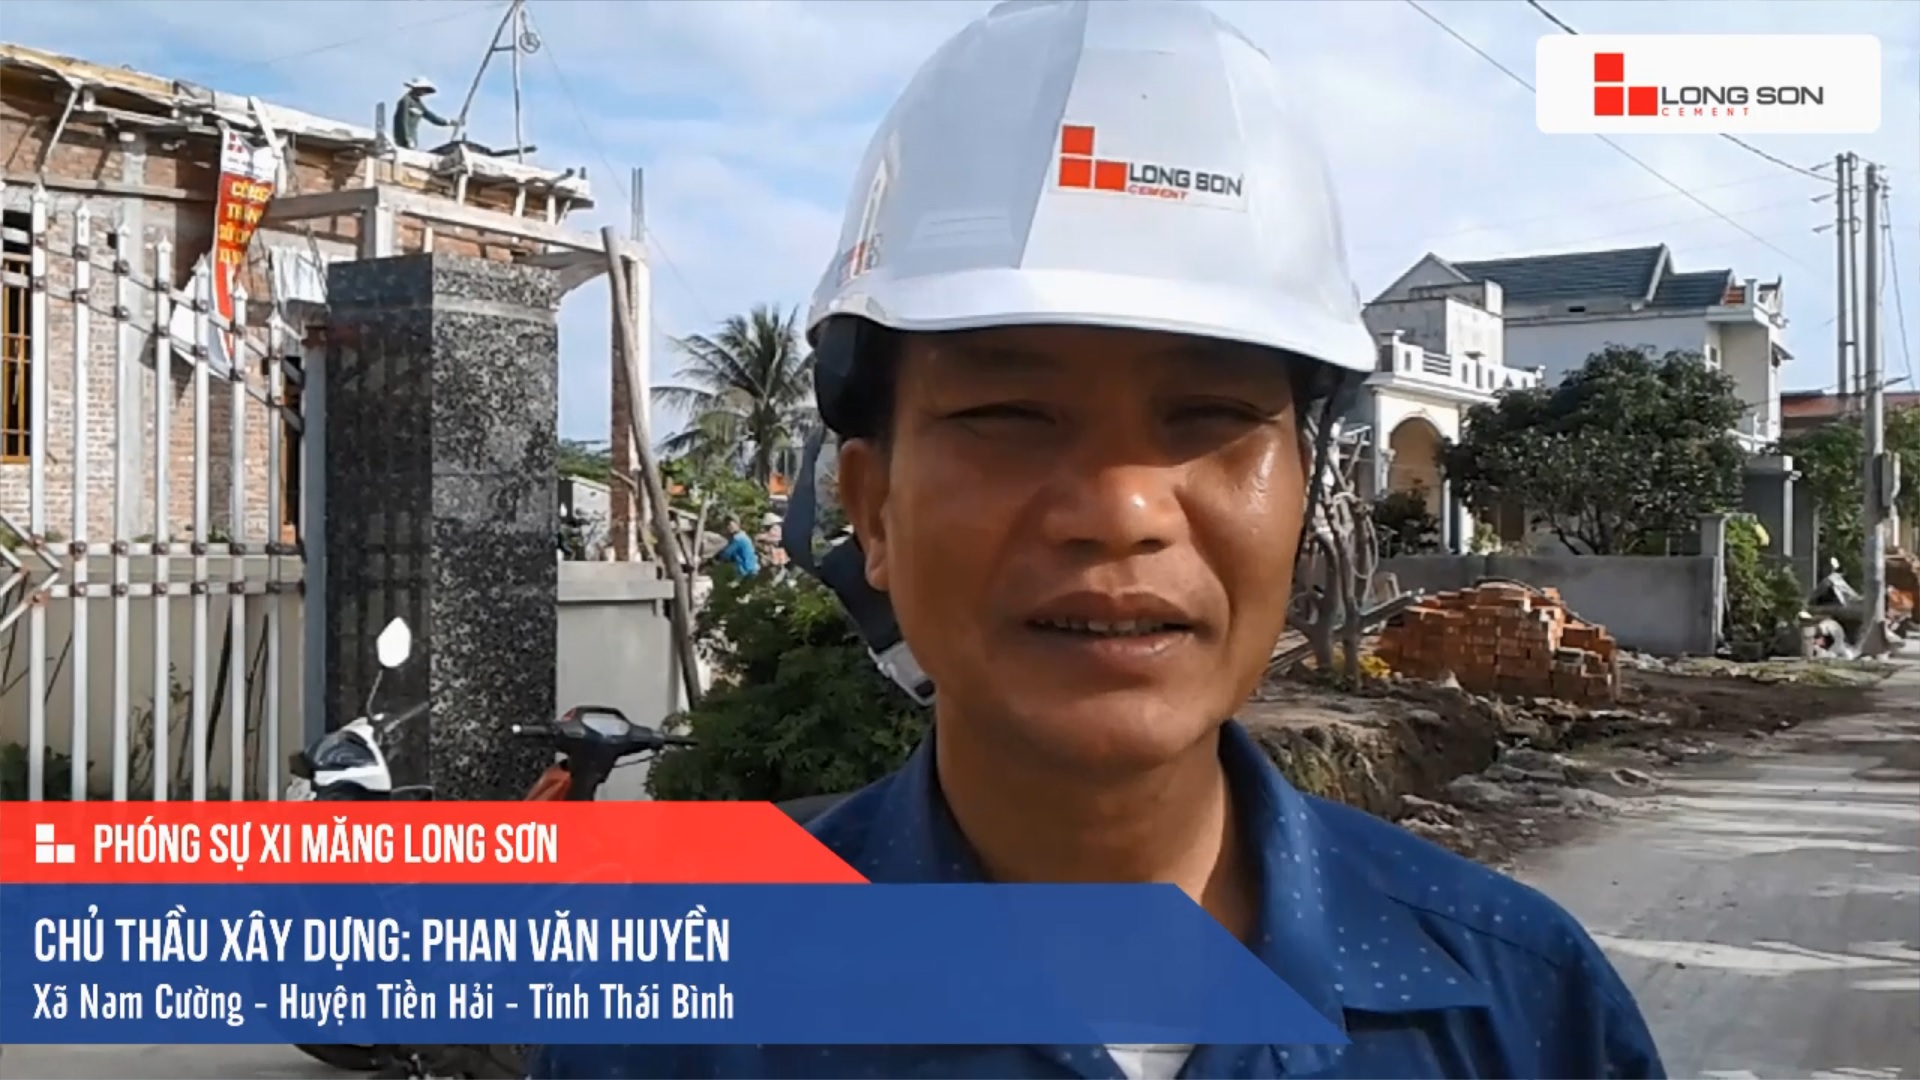 Phóng sự công trình sử dụng Xi măng Long Sơn tại Thái Bình 23.11.2020